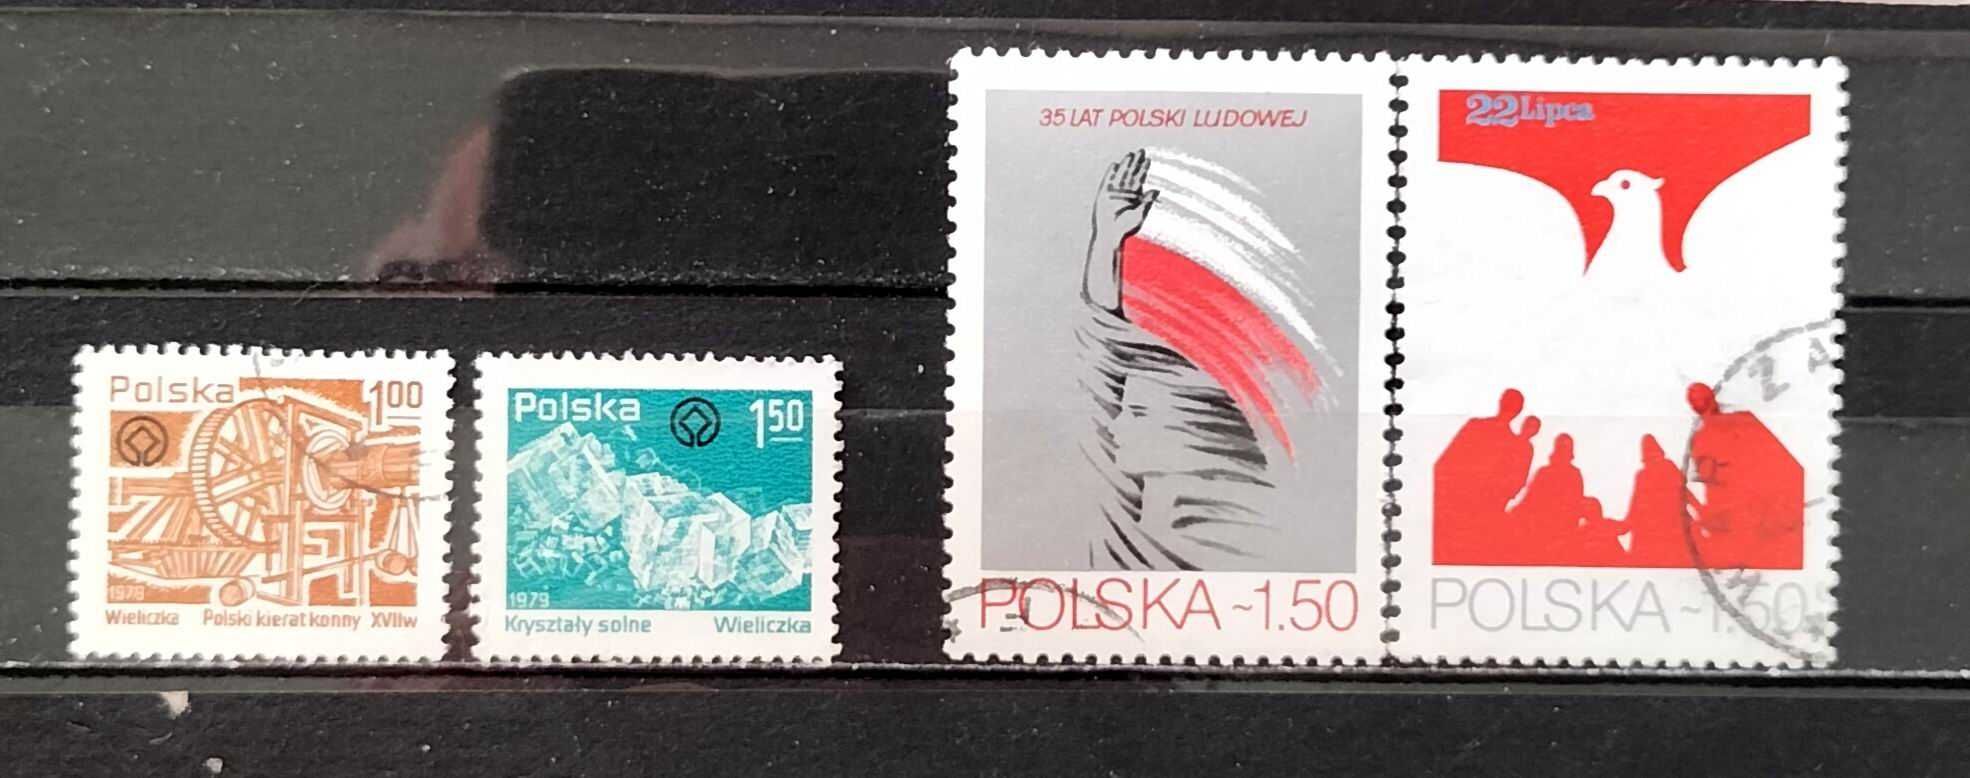 L Znaczki polskie rok 1979 kwartał III